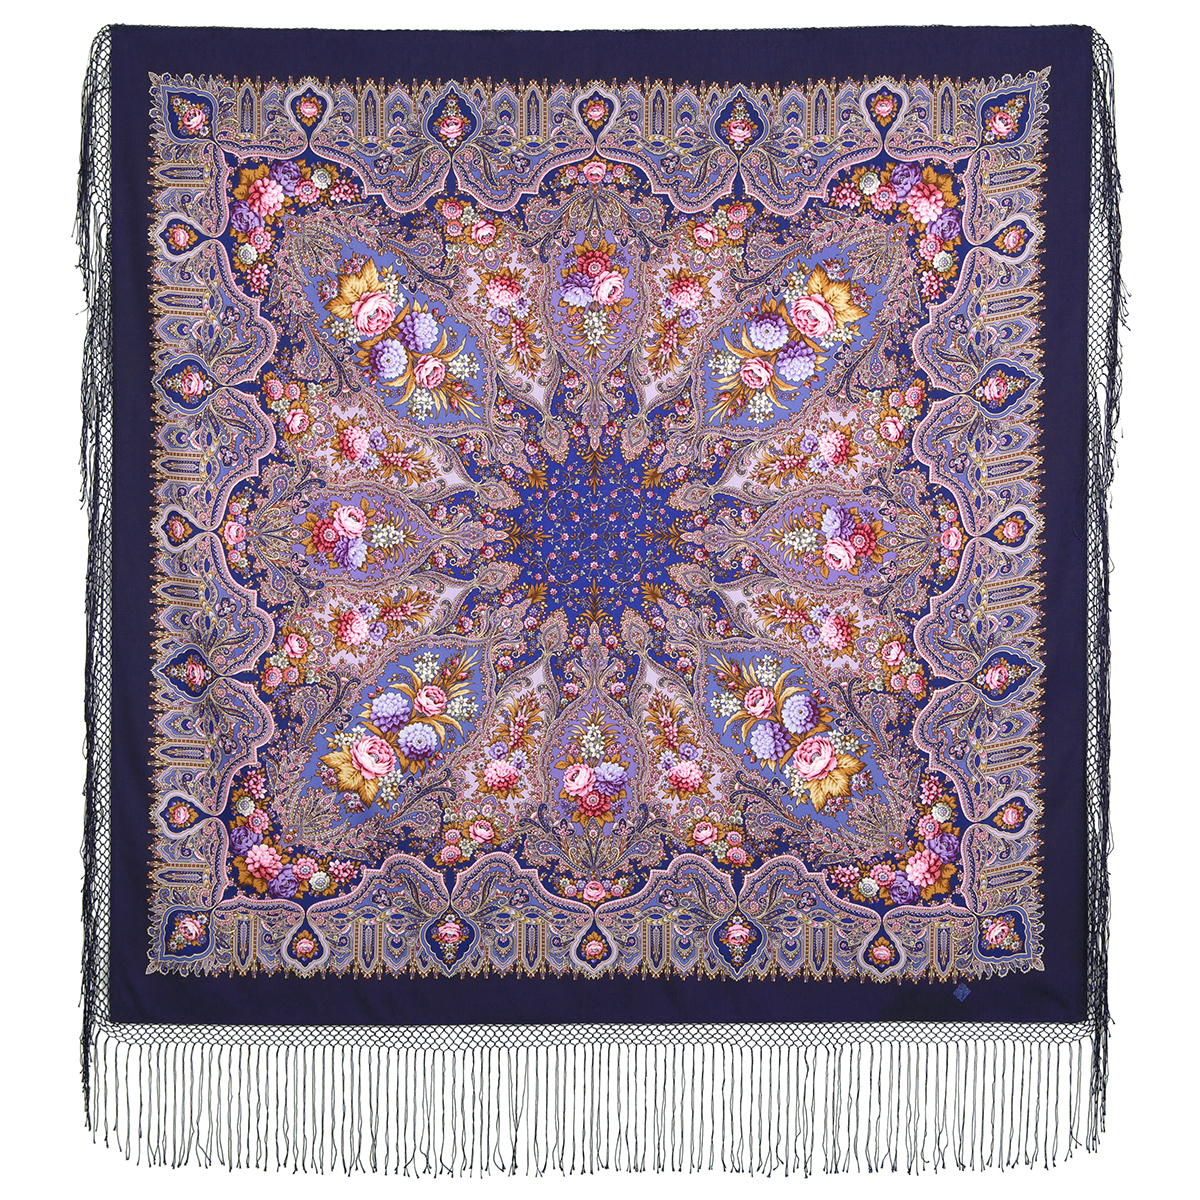 Платок женский Павловопосадский платок 1369 сиреневый, 148х148 см